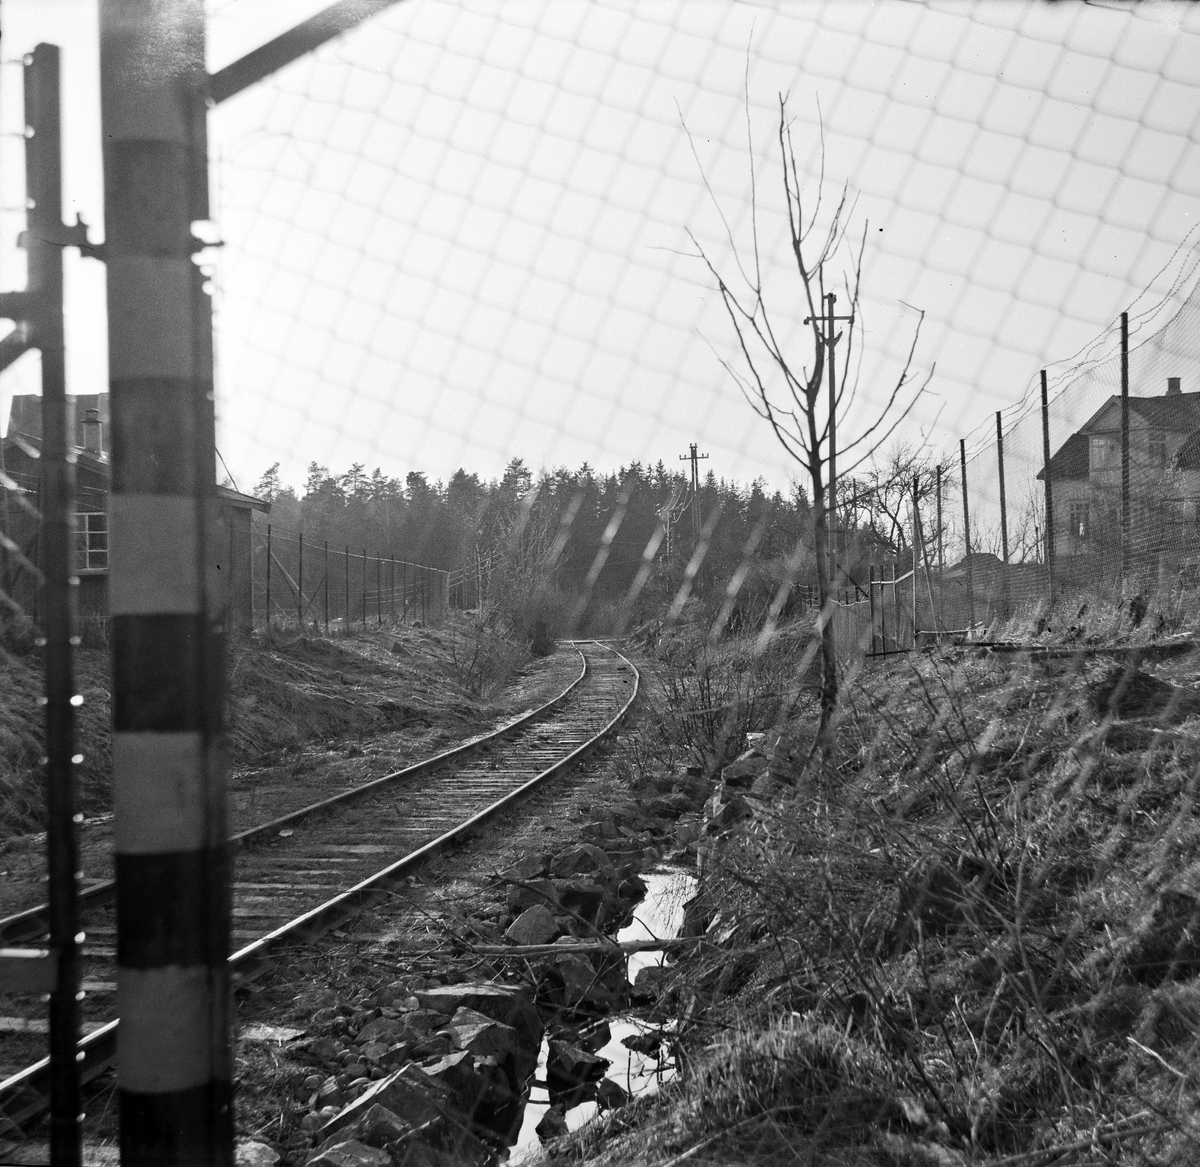 Fra nedlagt trase på Østfoldbanen ved Holmlia. Banen ble lagt om via Hauketo i 1925 i forbindelse med at Ljansviadukten ble tatt ut av bruk, men deler av den gamle traseen ble beholdt som sidespor.